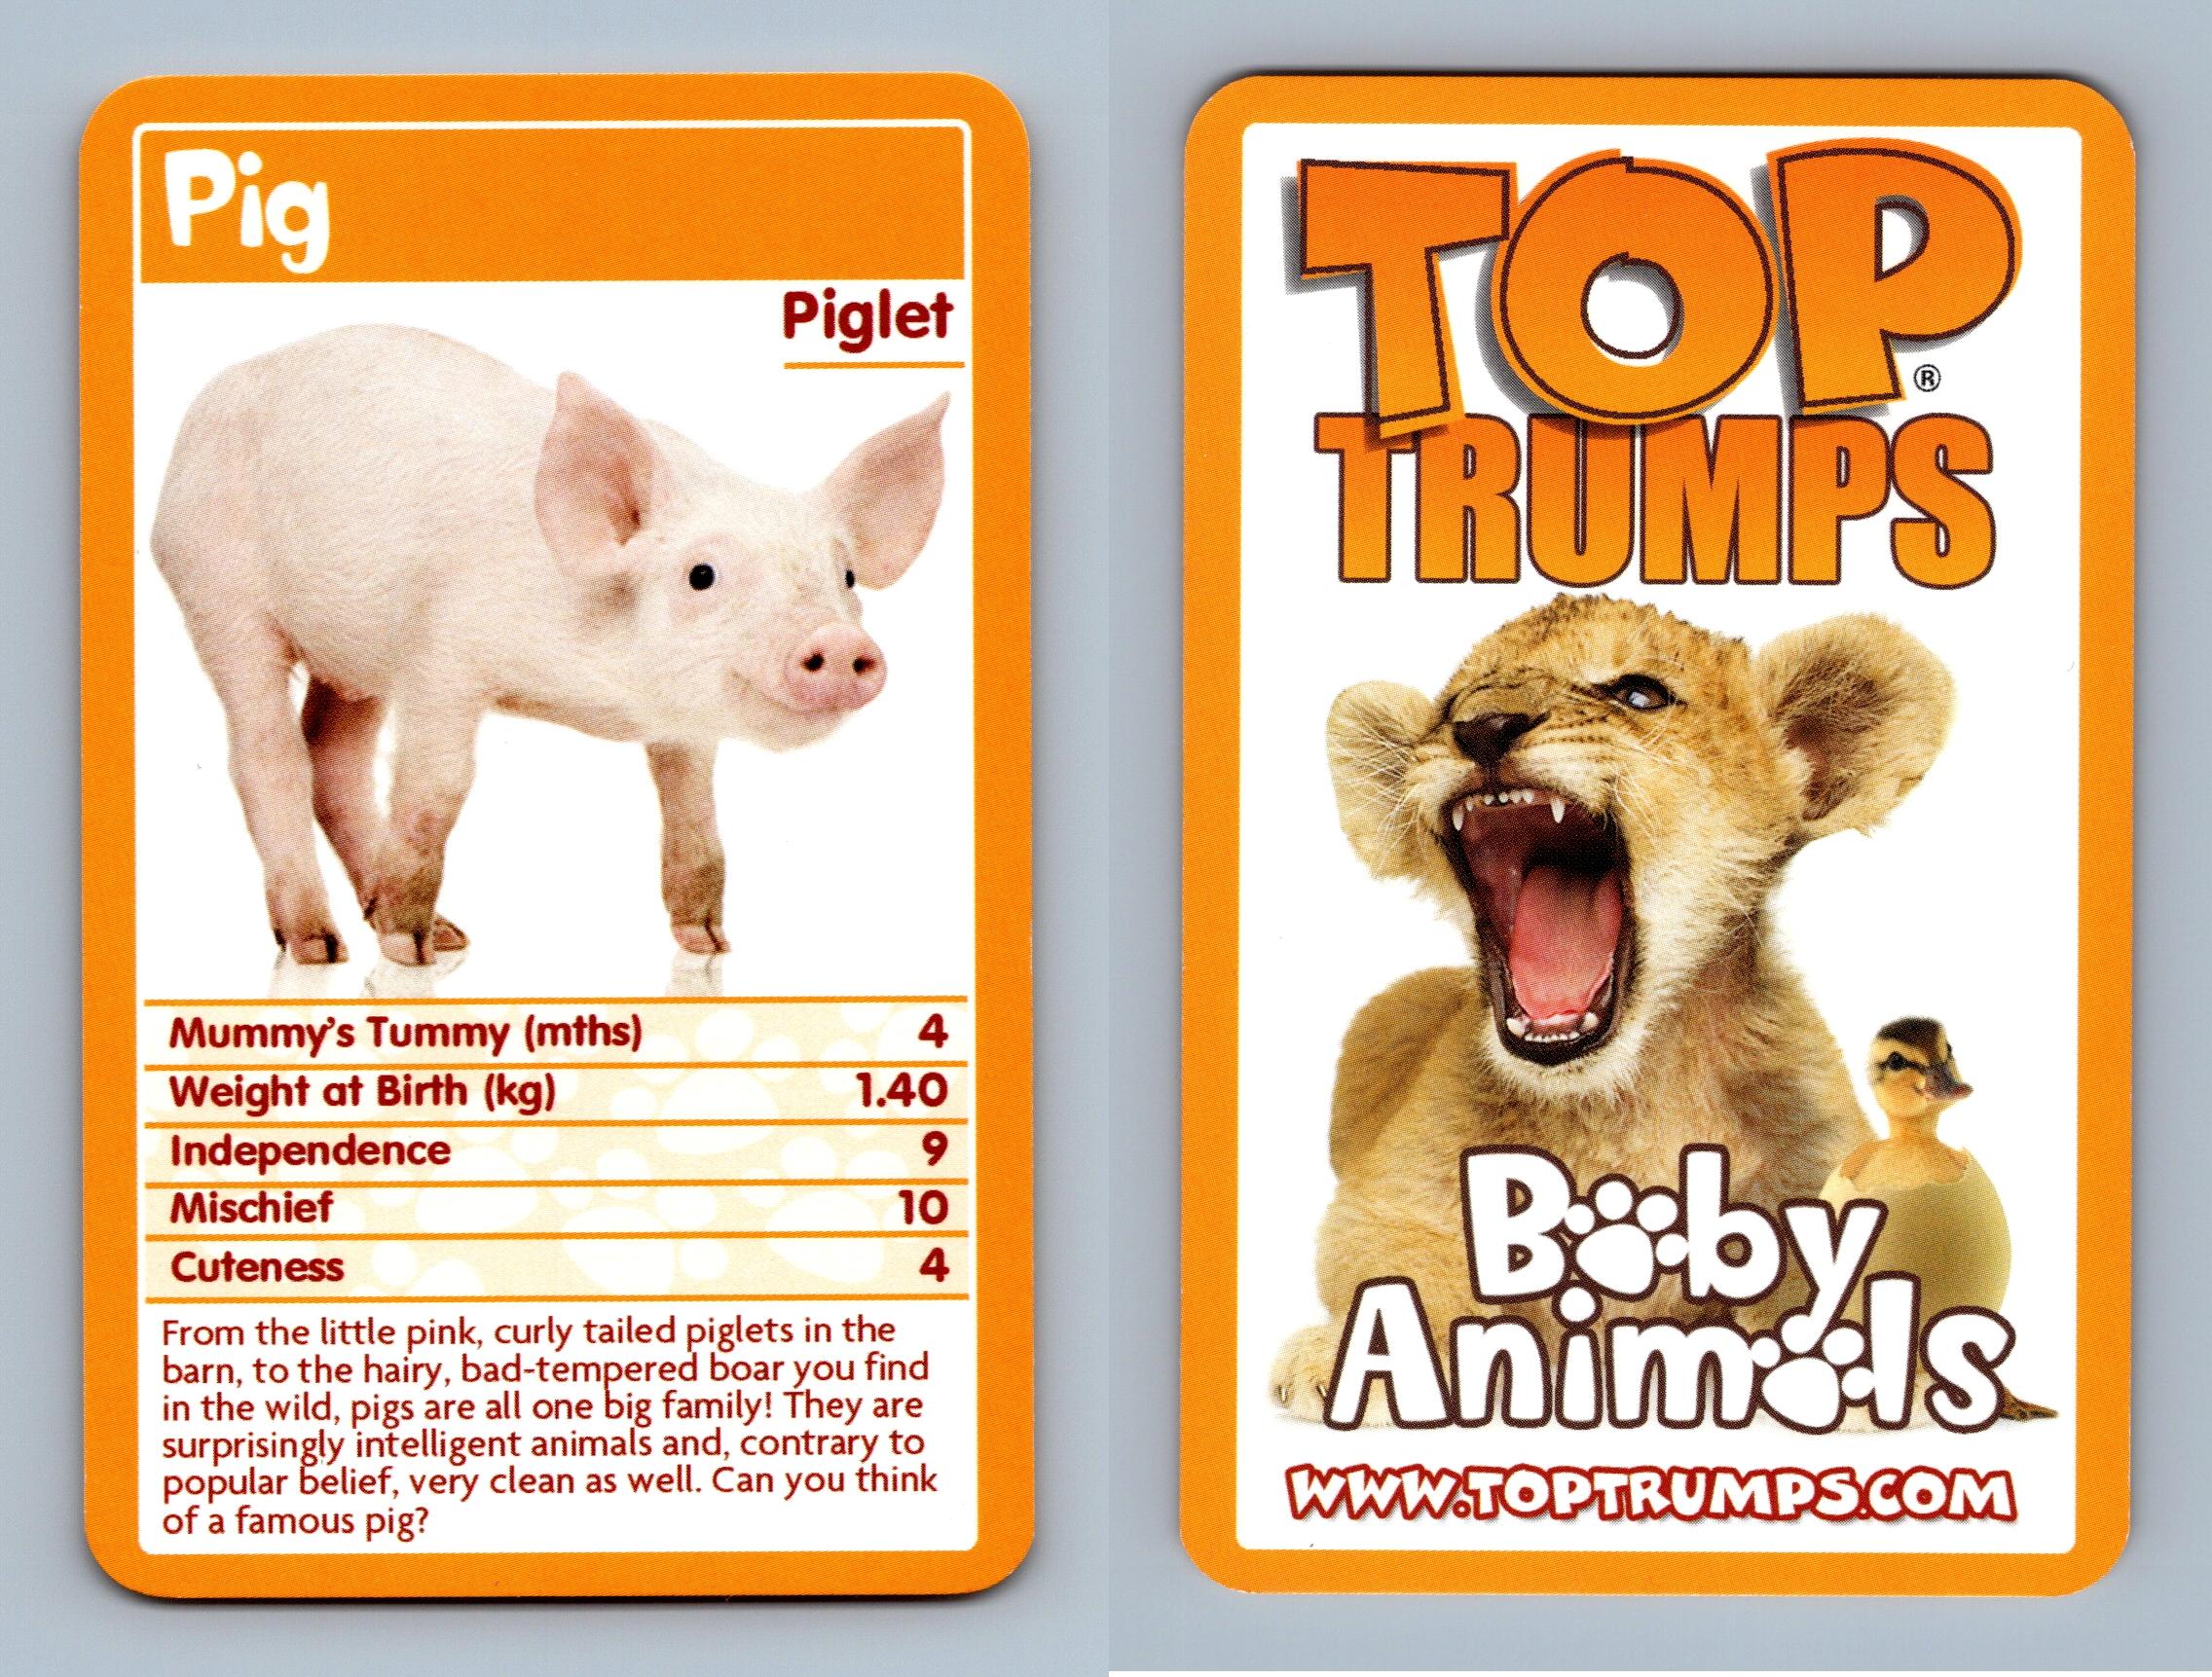 Pig / Piglet - Baby Animals 2009 Top Trumps Card - Afbeelding 1 van 1